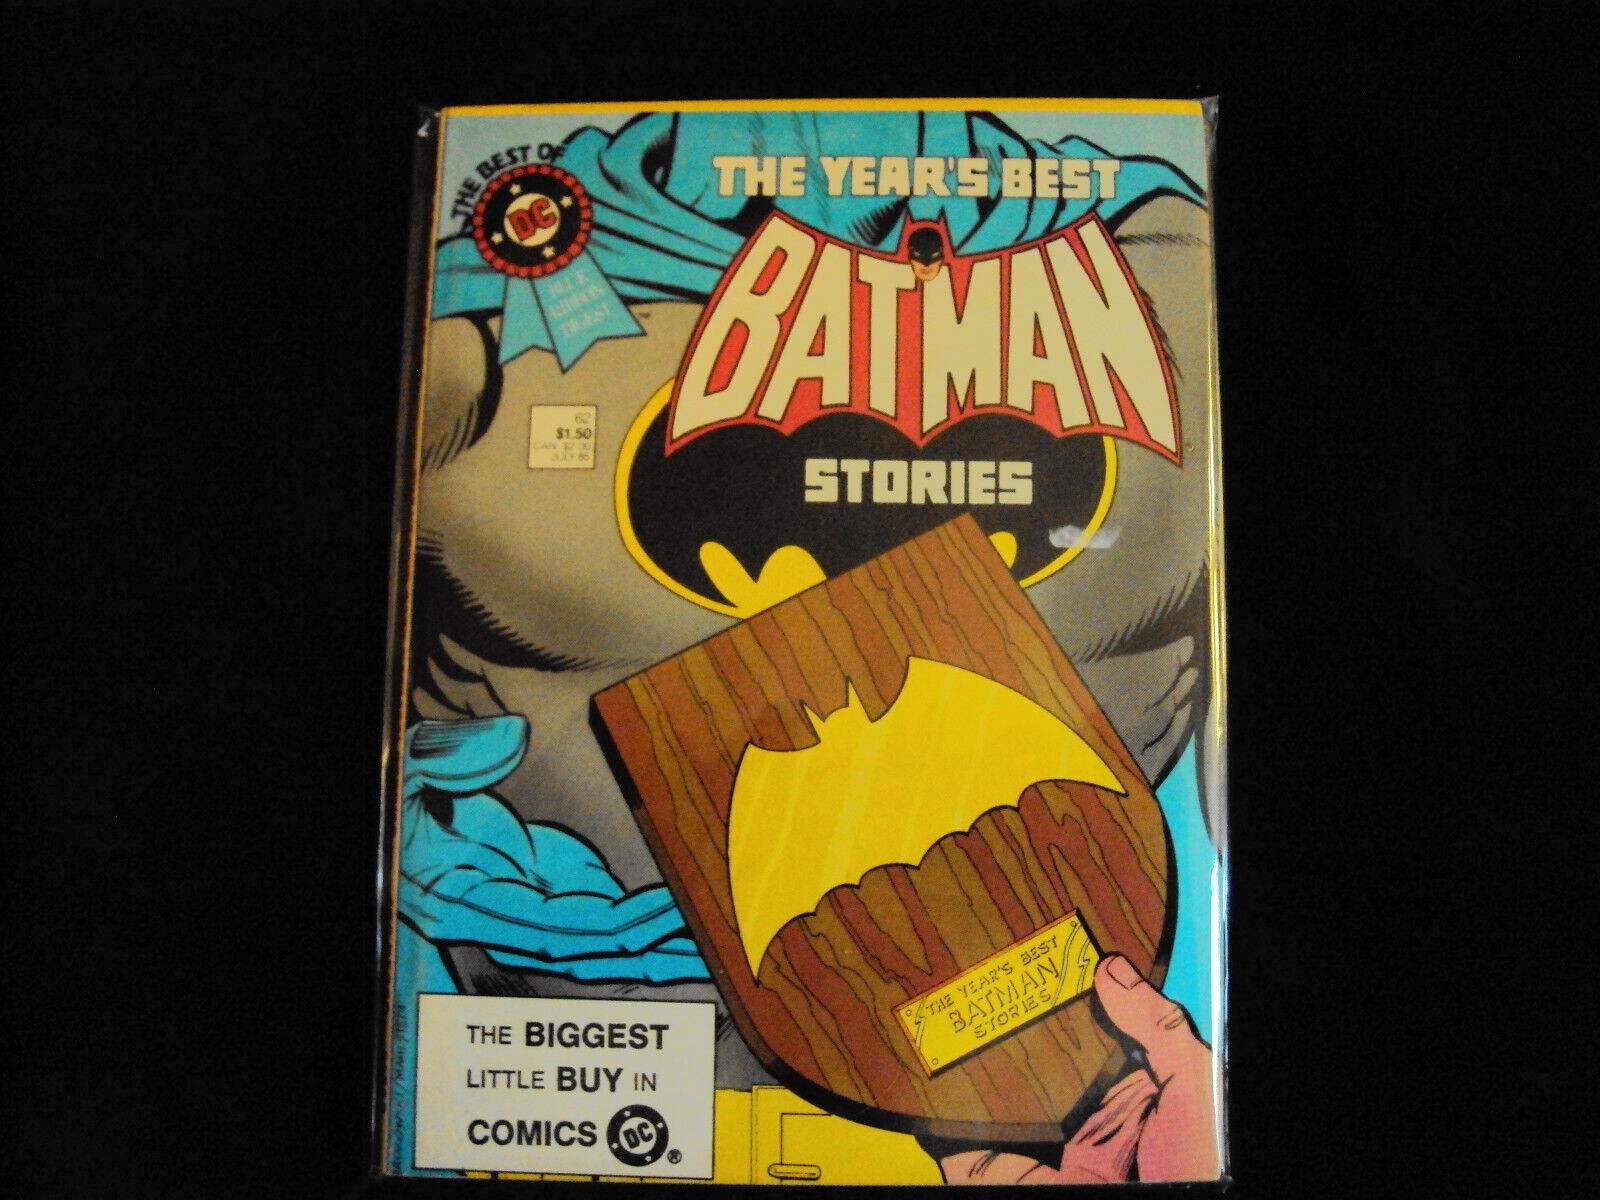 Vintage The Years Best Batman Stories